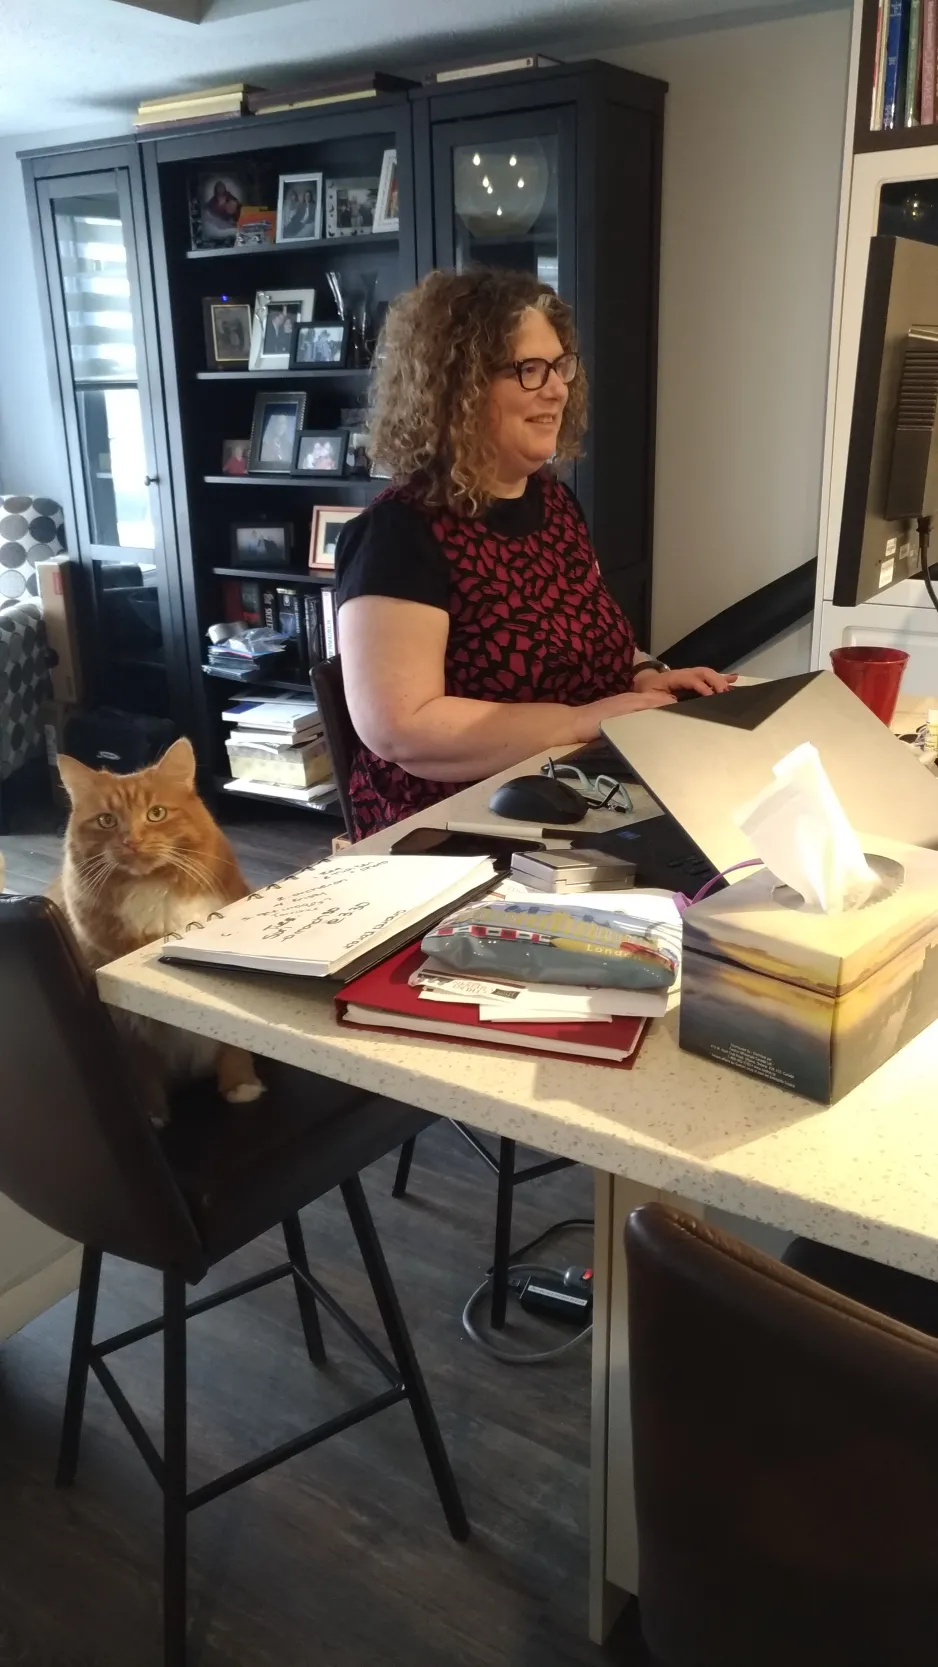 L’image est une photo montrant une femme assise à un îlot de cuisine, où est installé un ordinateur portable. Un chat est assis sur une chaise, à côté d’elle. 